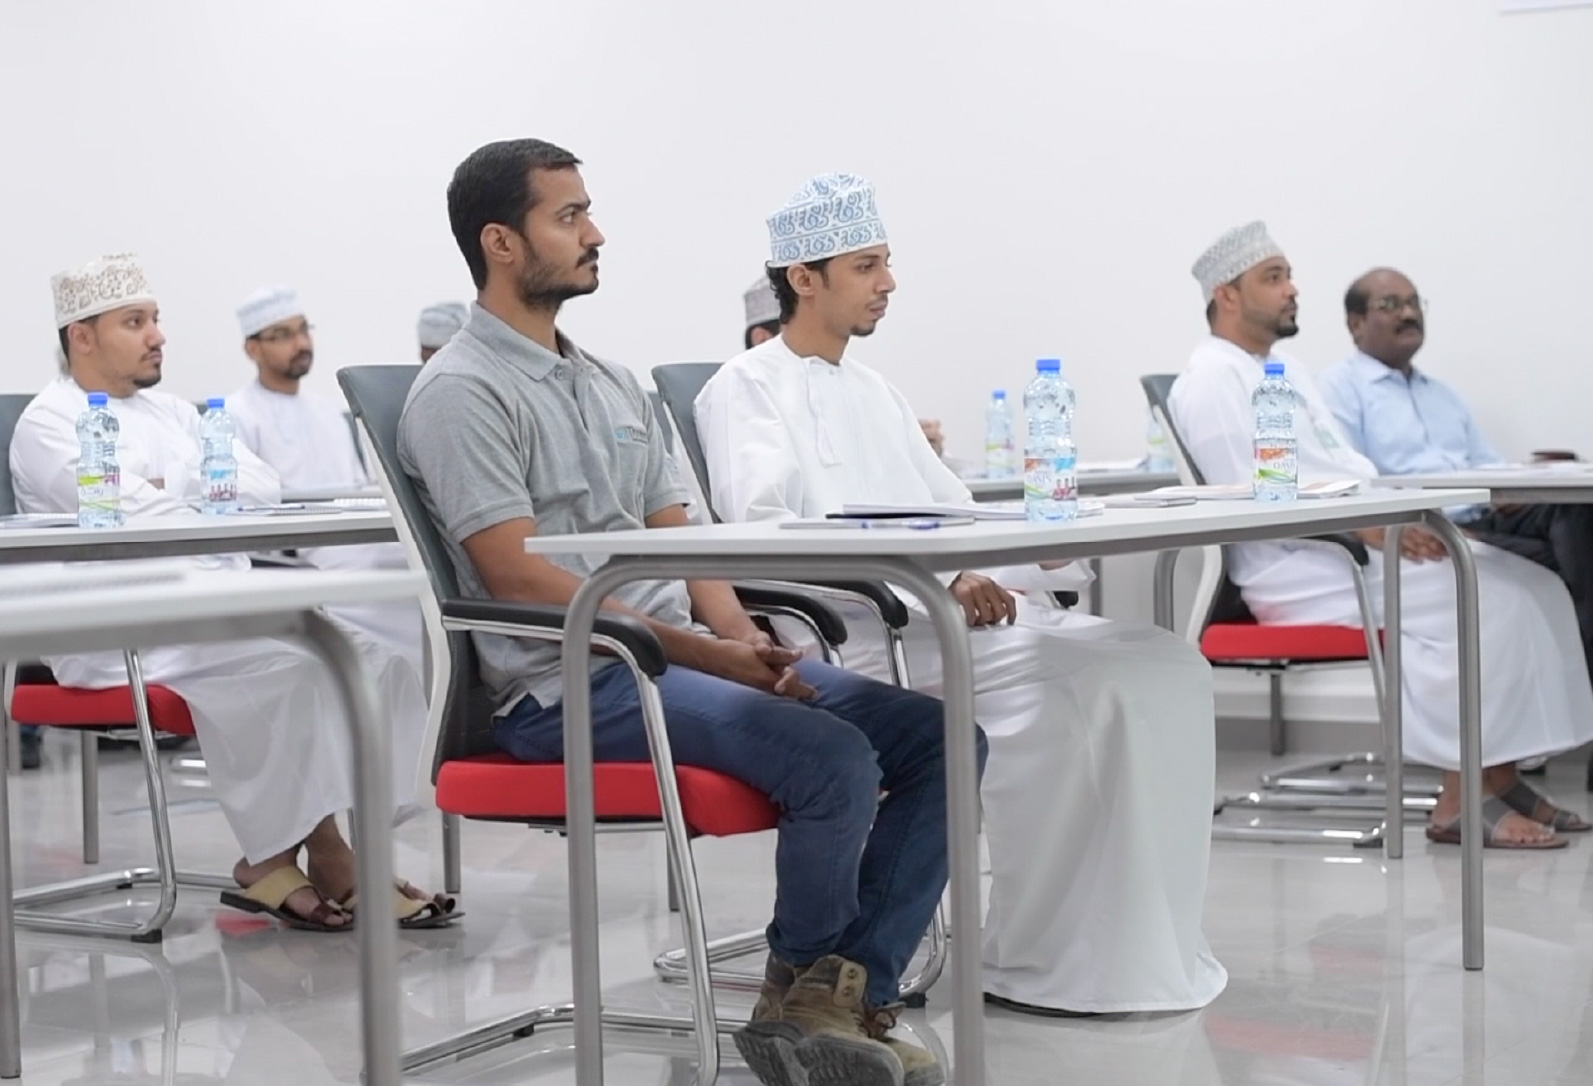 Oman optics fiber – Training institute